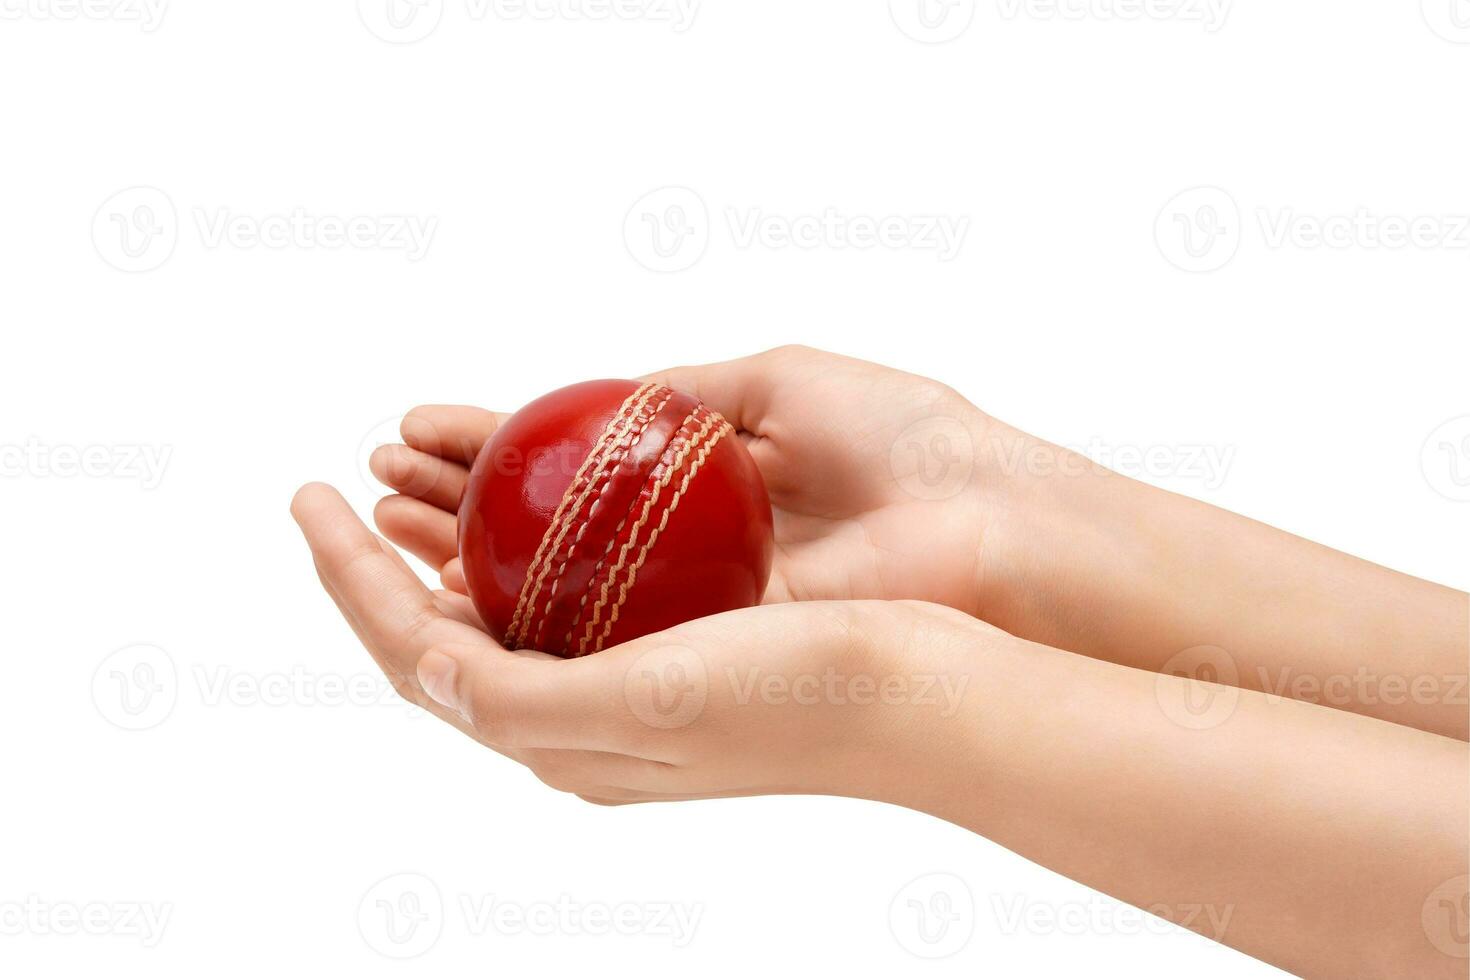 fêmea jogador de críquete mãos levando a pegar do uma vermelho couro Grilo bola fechar-se foto branco fundo